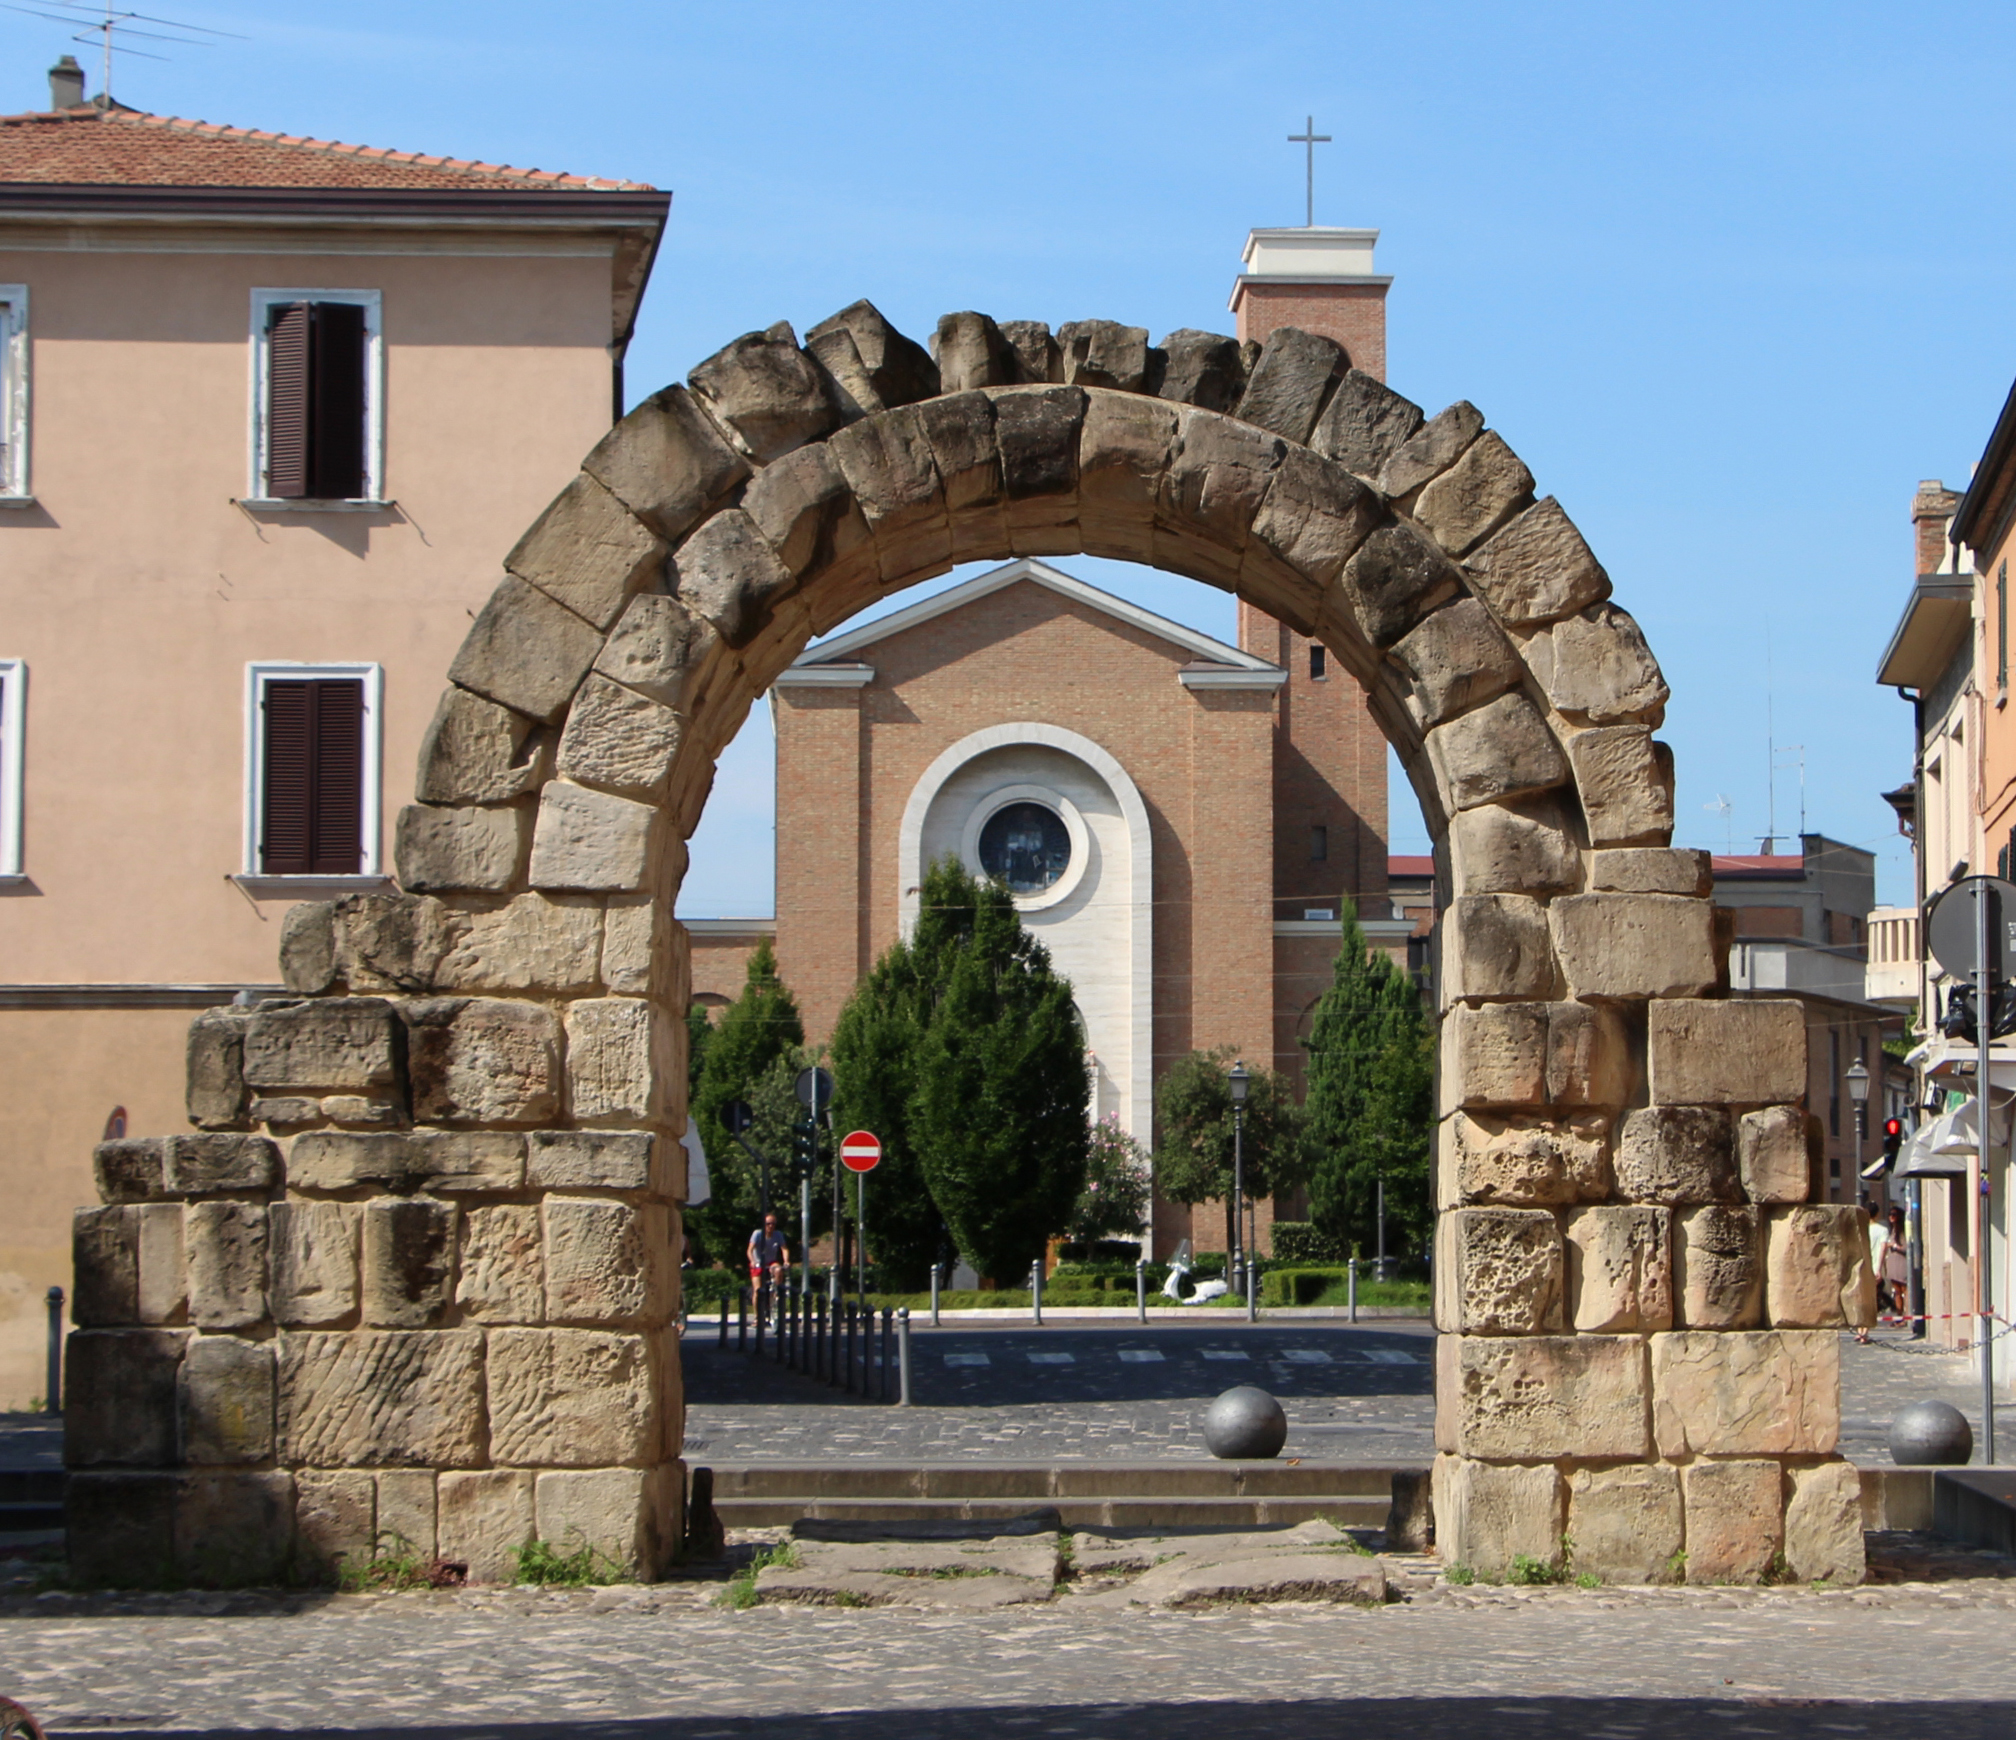 foto: https://upload.wikimedia.org/wikipedia/commons/e/e5/Rimini%2C_porta_montagnara%2C_veduta_01.JPG